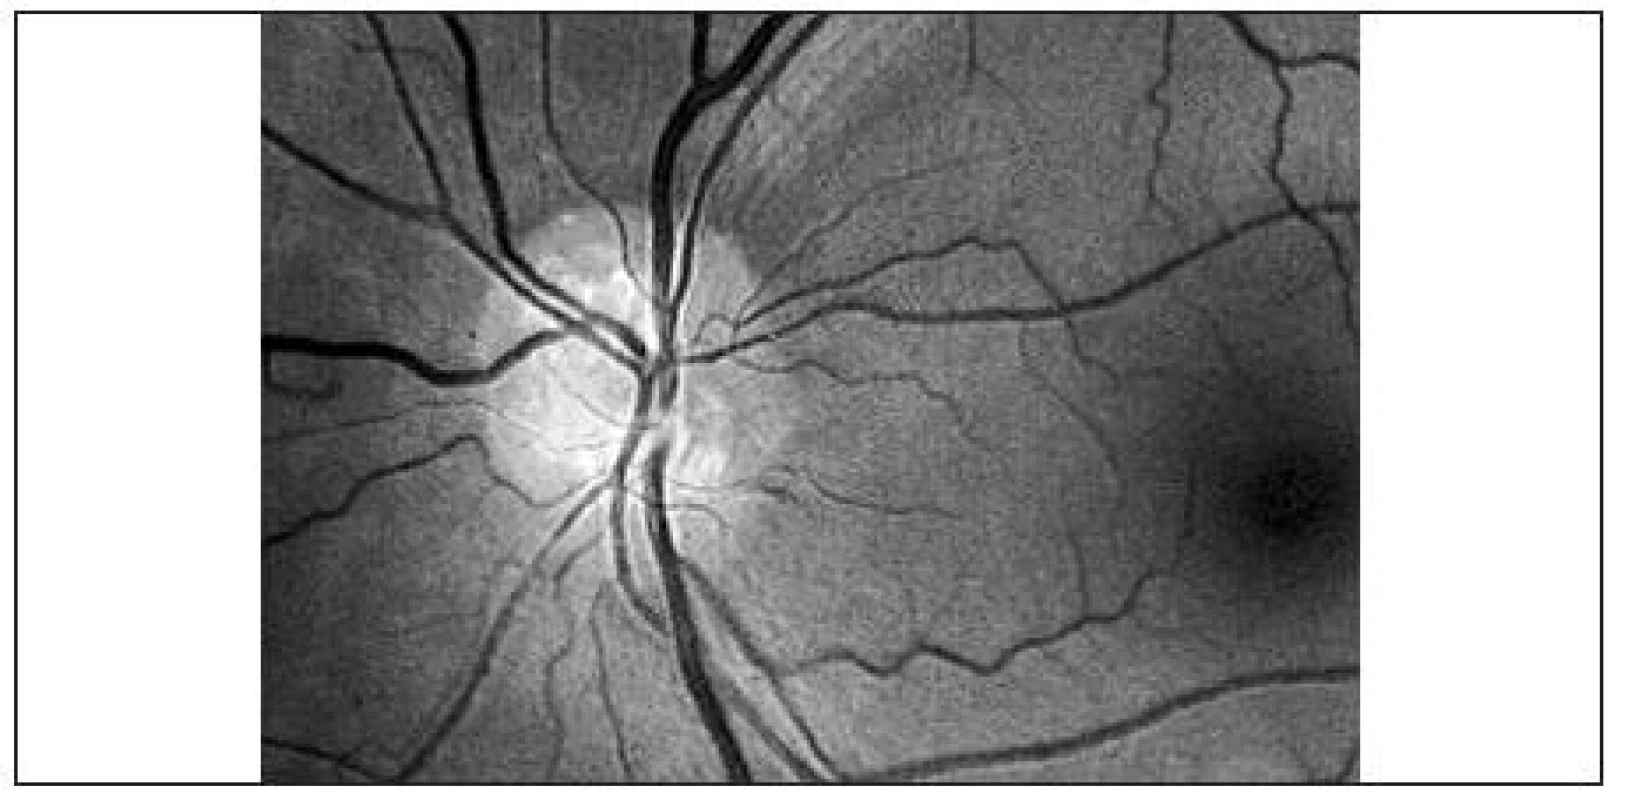 Povrchovo lokalizované drúzy zrakového nervu ľavého oka, dobre viditeľné na red free fotografii